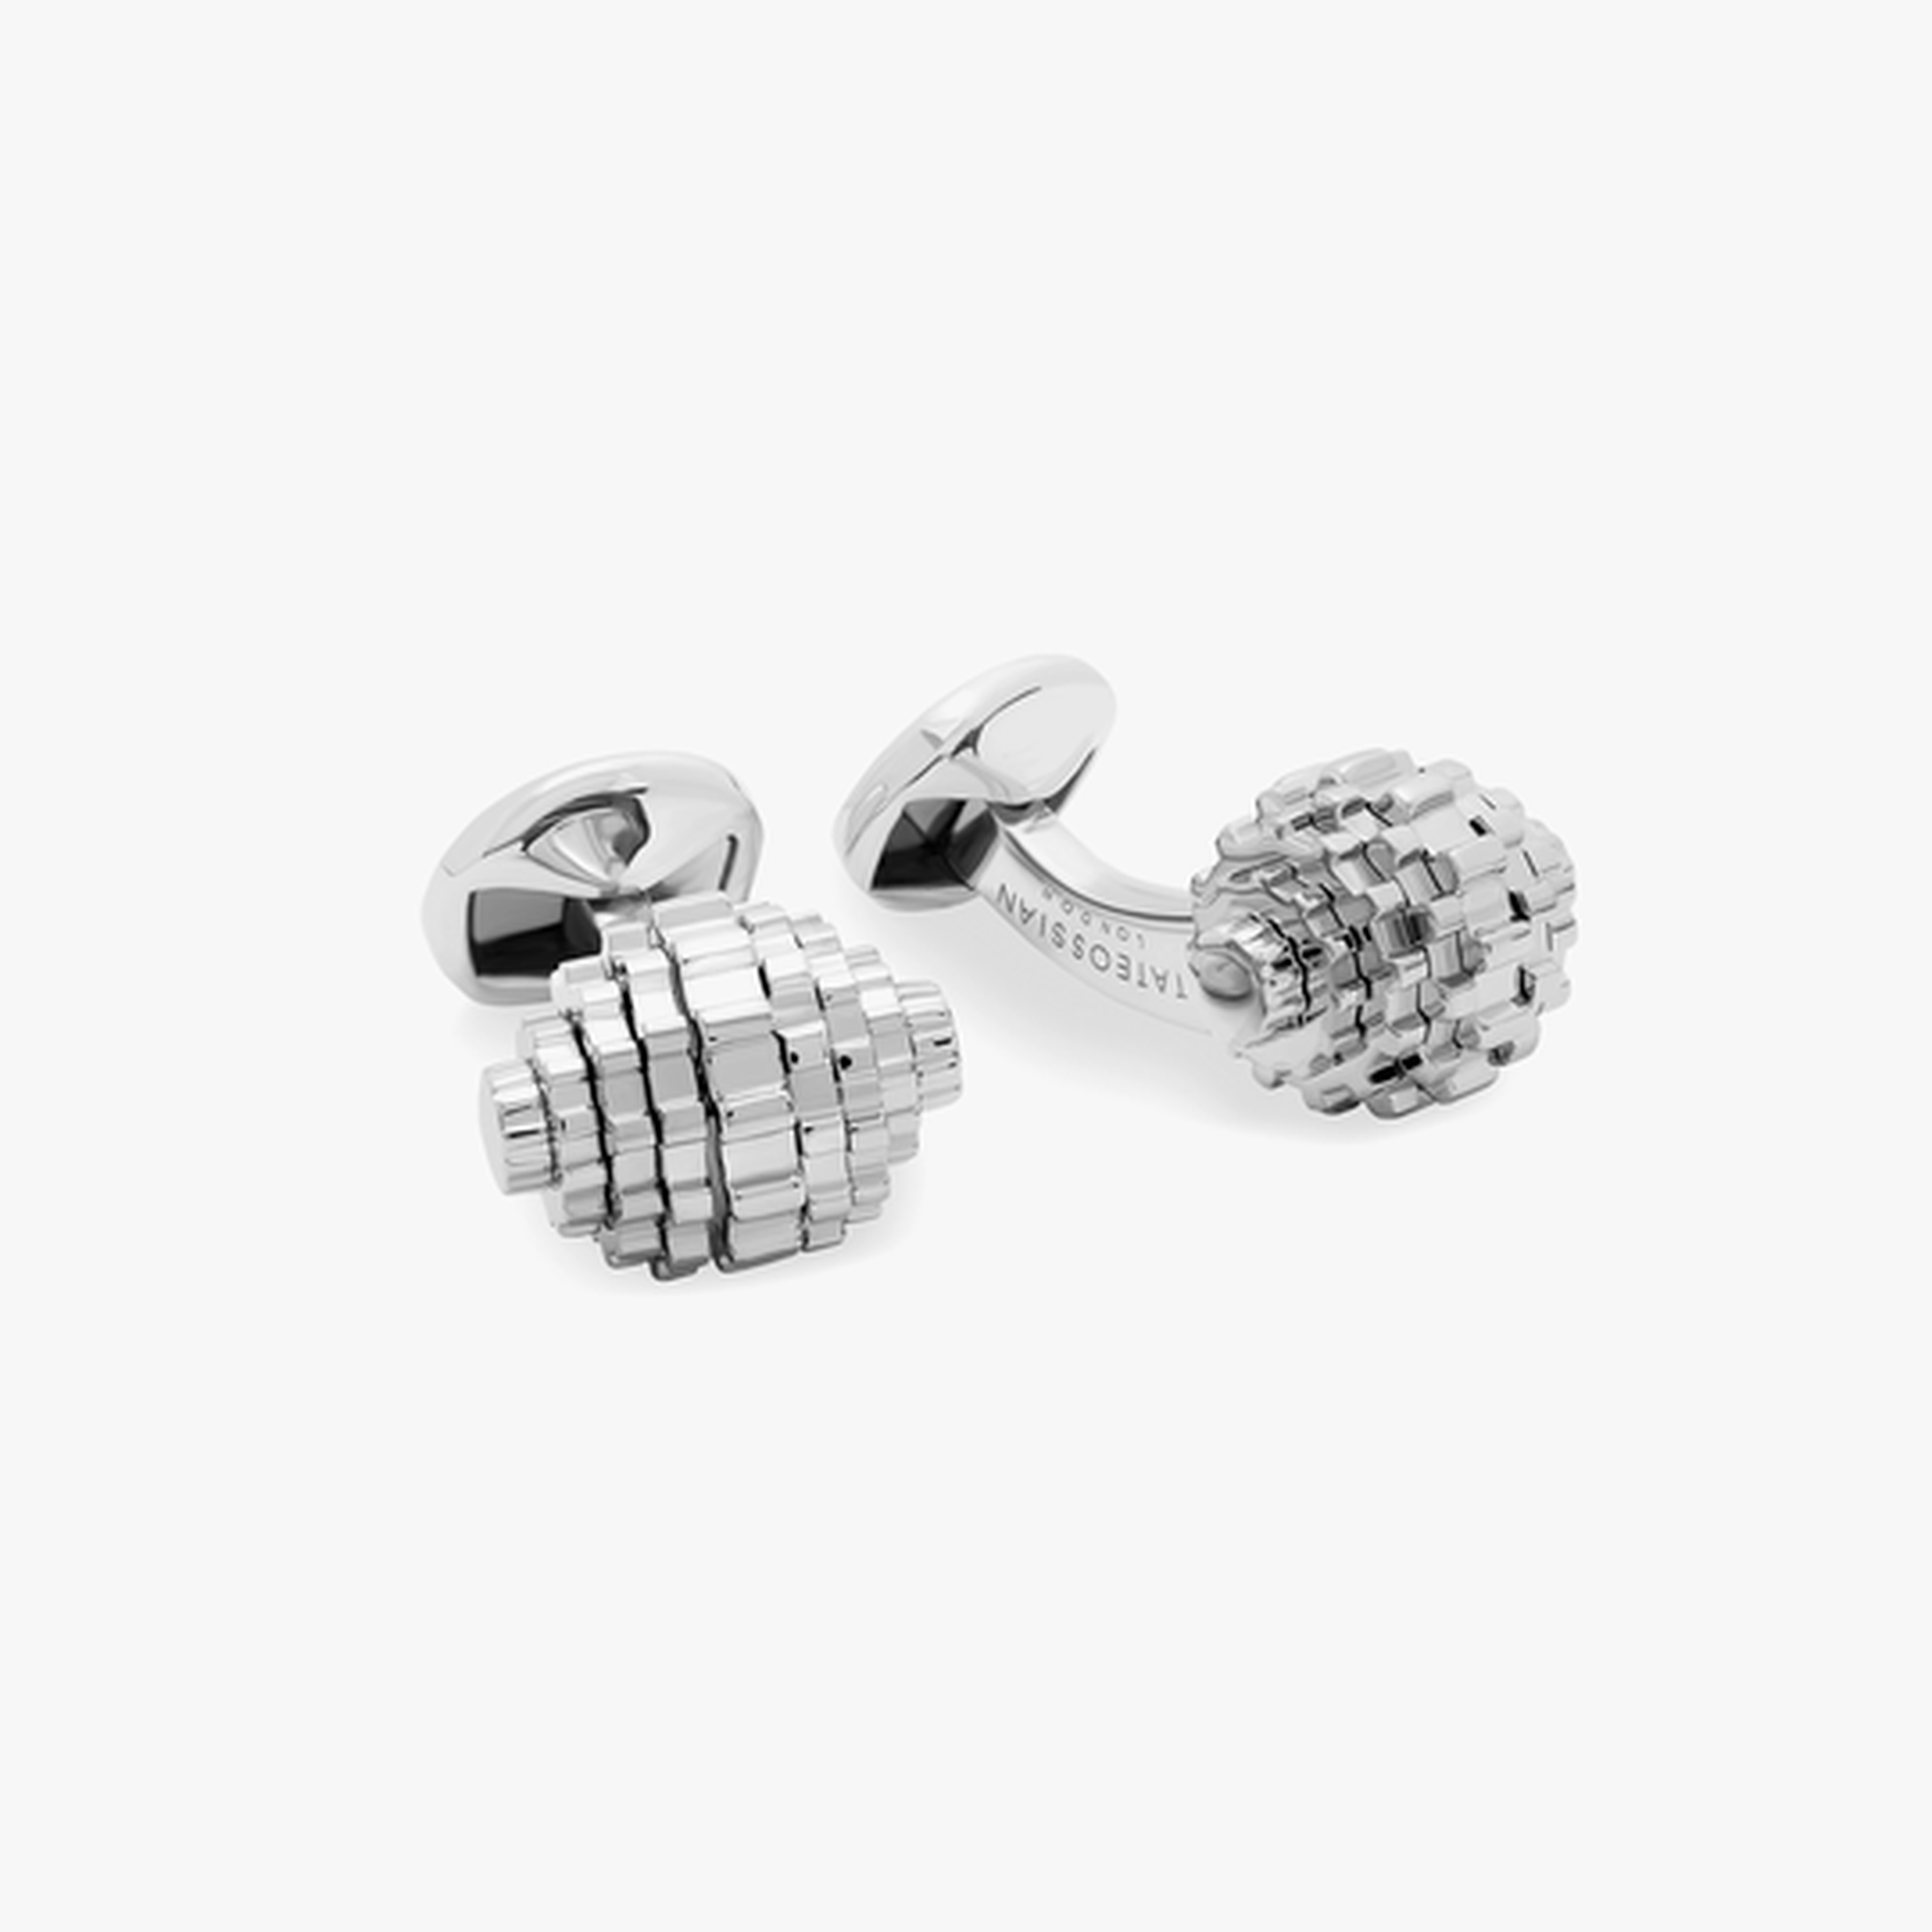 Sphere Gear cufflinks in stainless steel Silver - Tateossian-Cufflinks-Tateossian-Cufflinks.com.sg